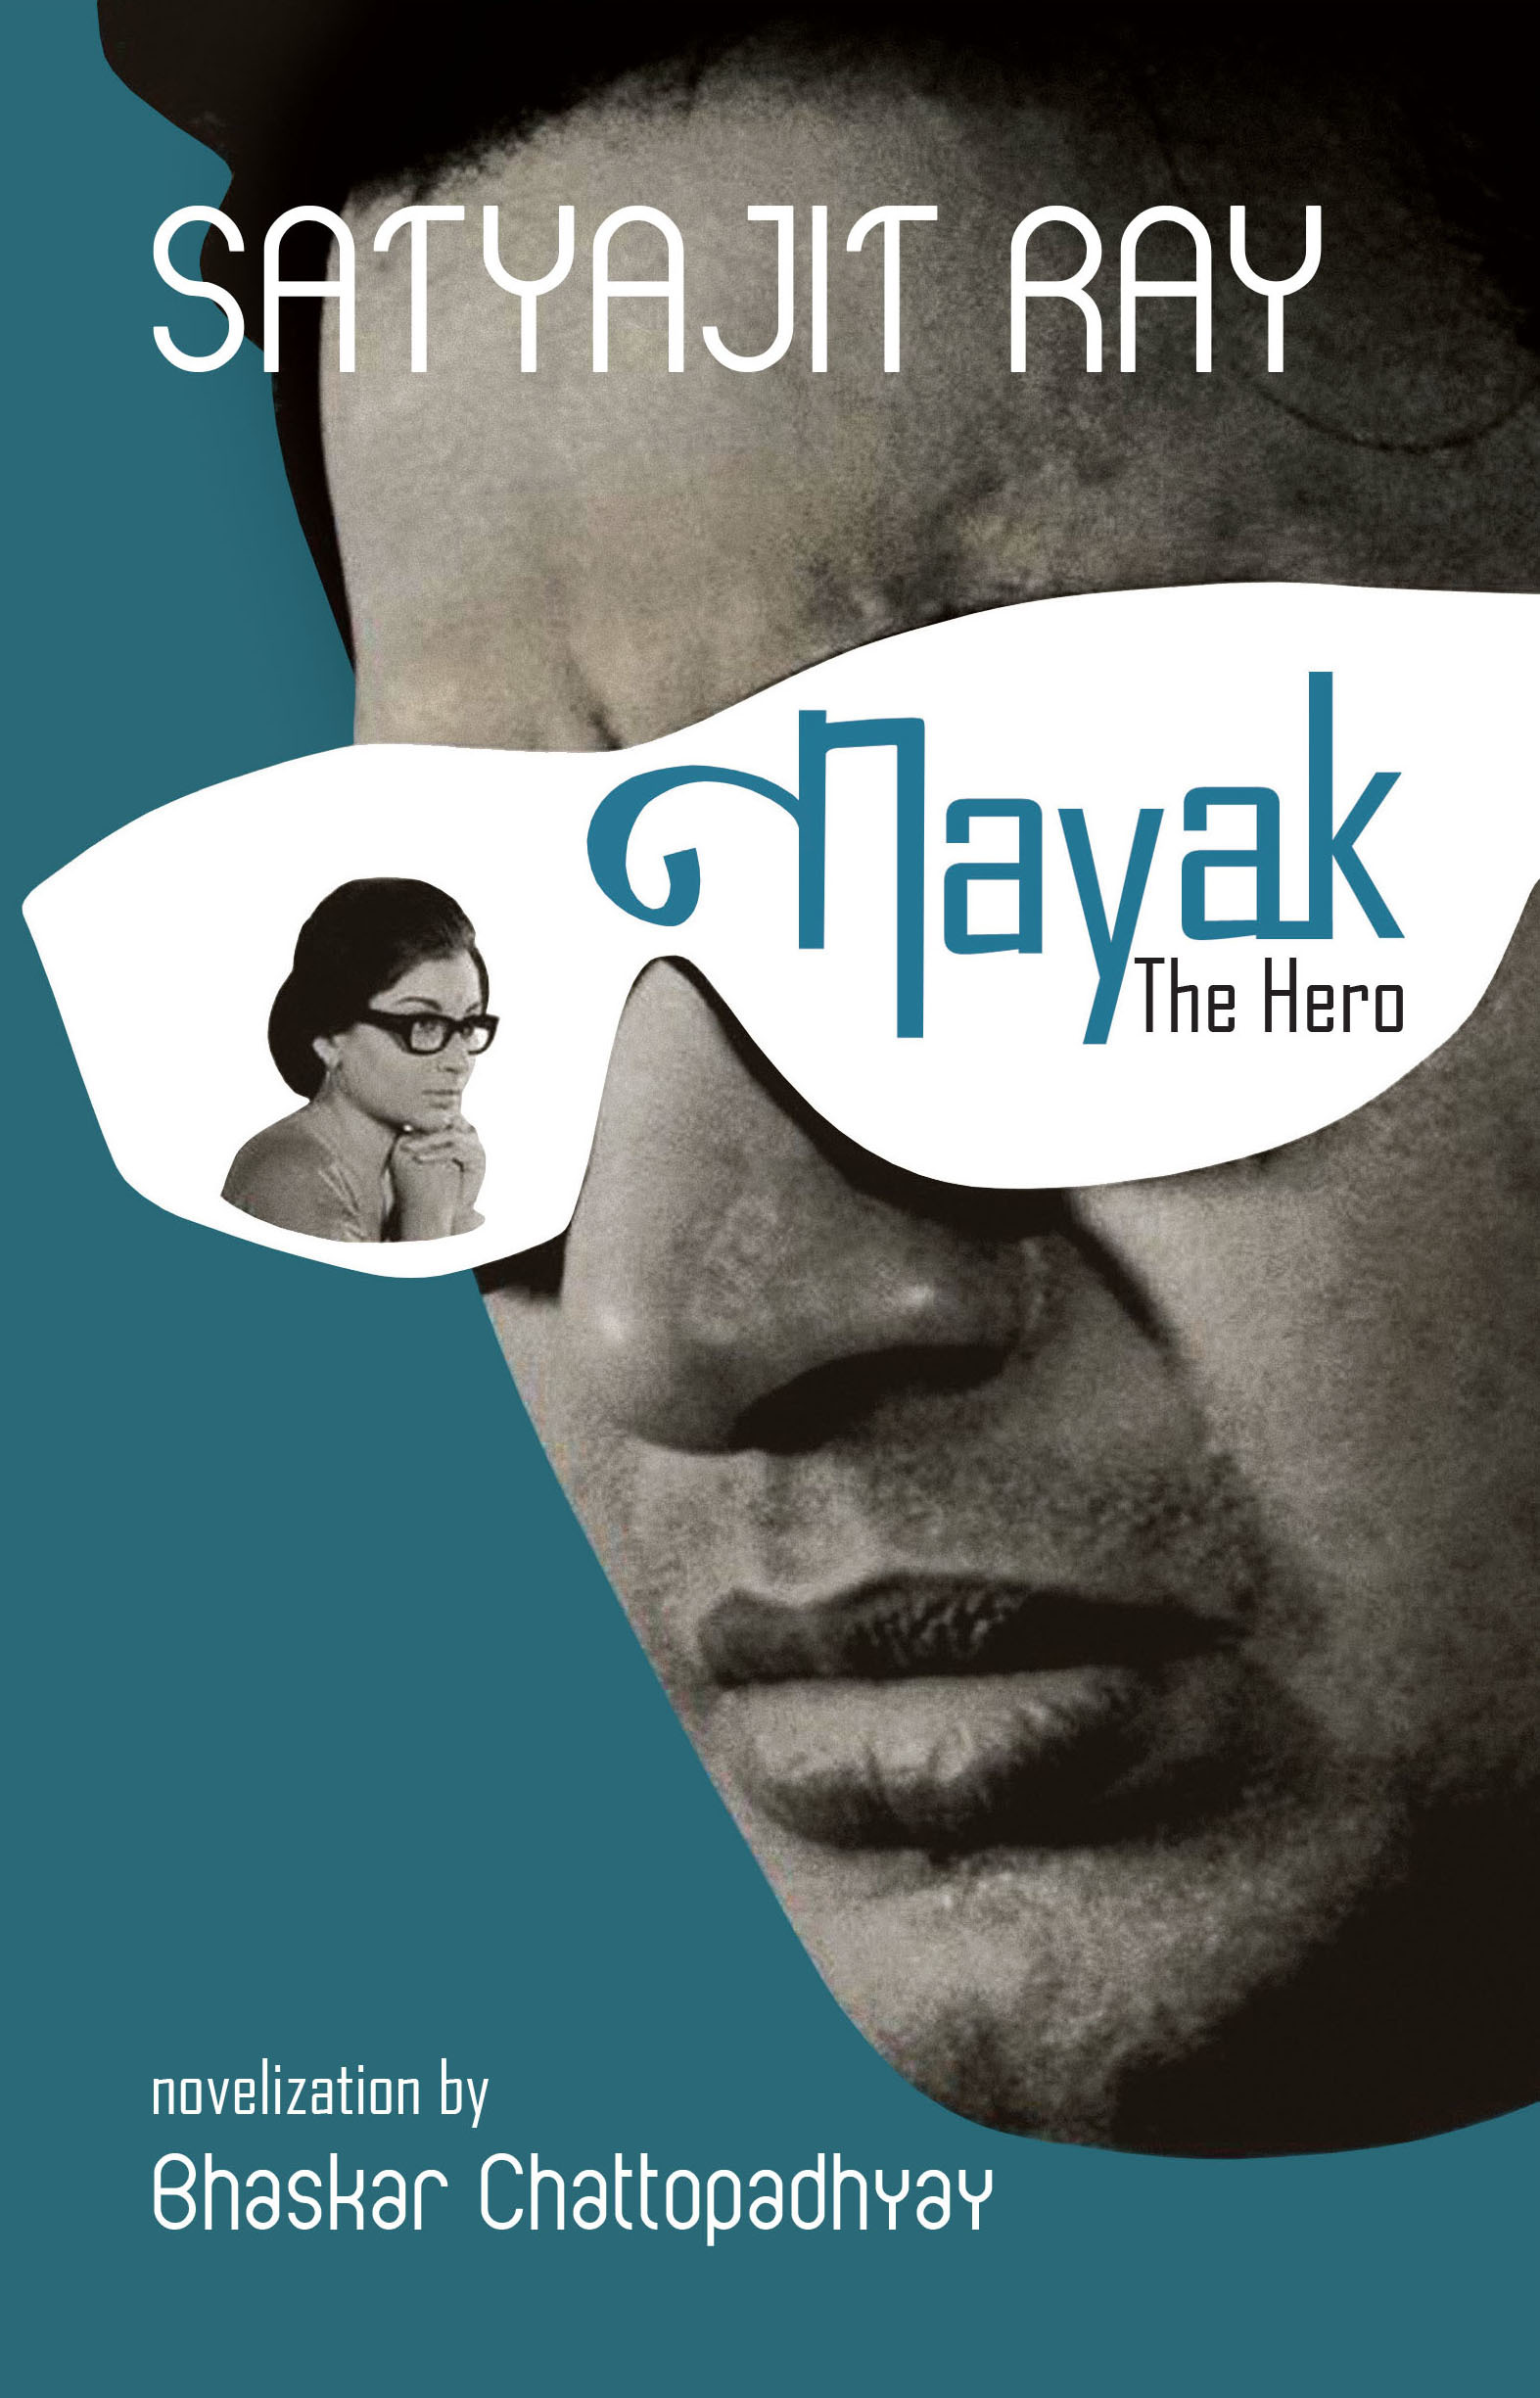 nayak - the hero